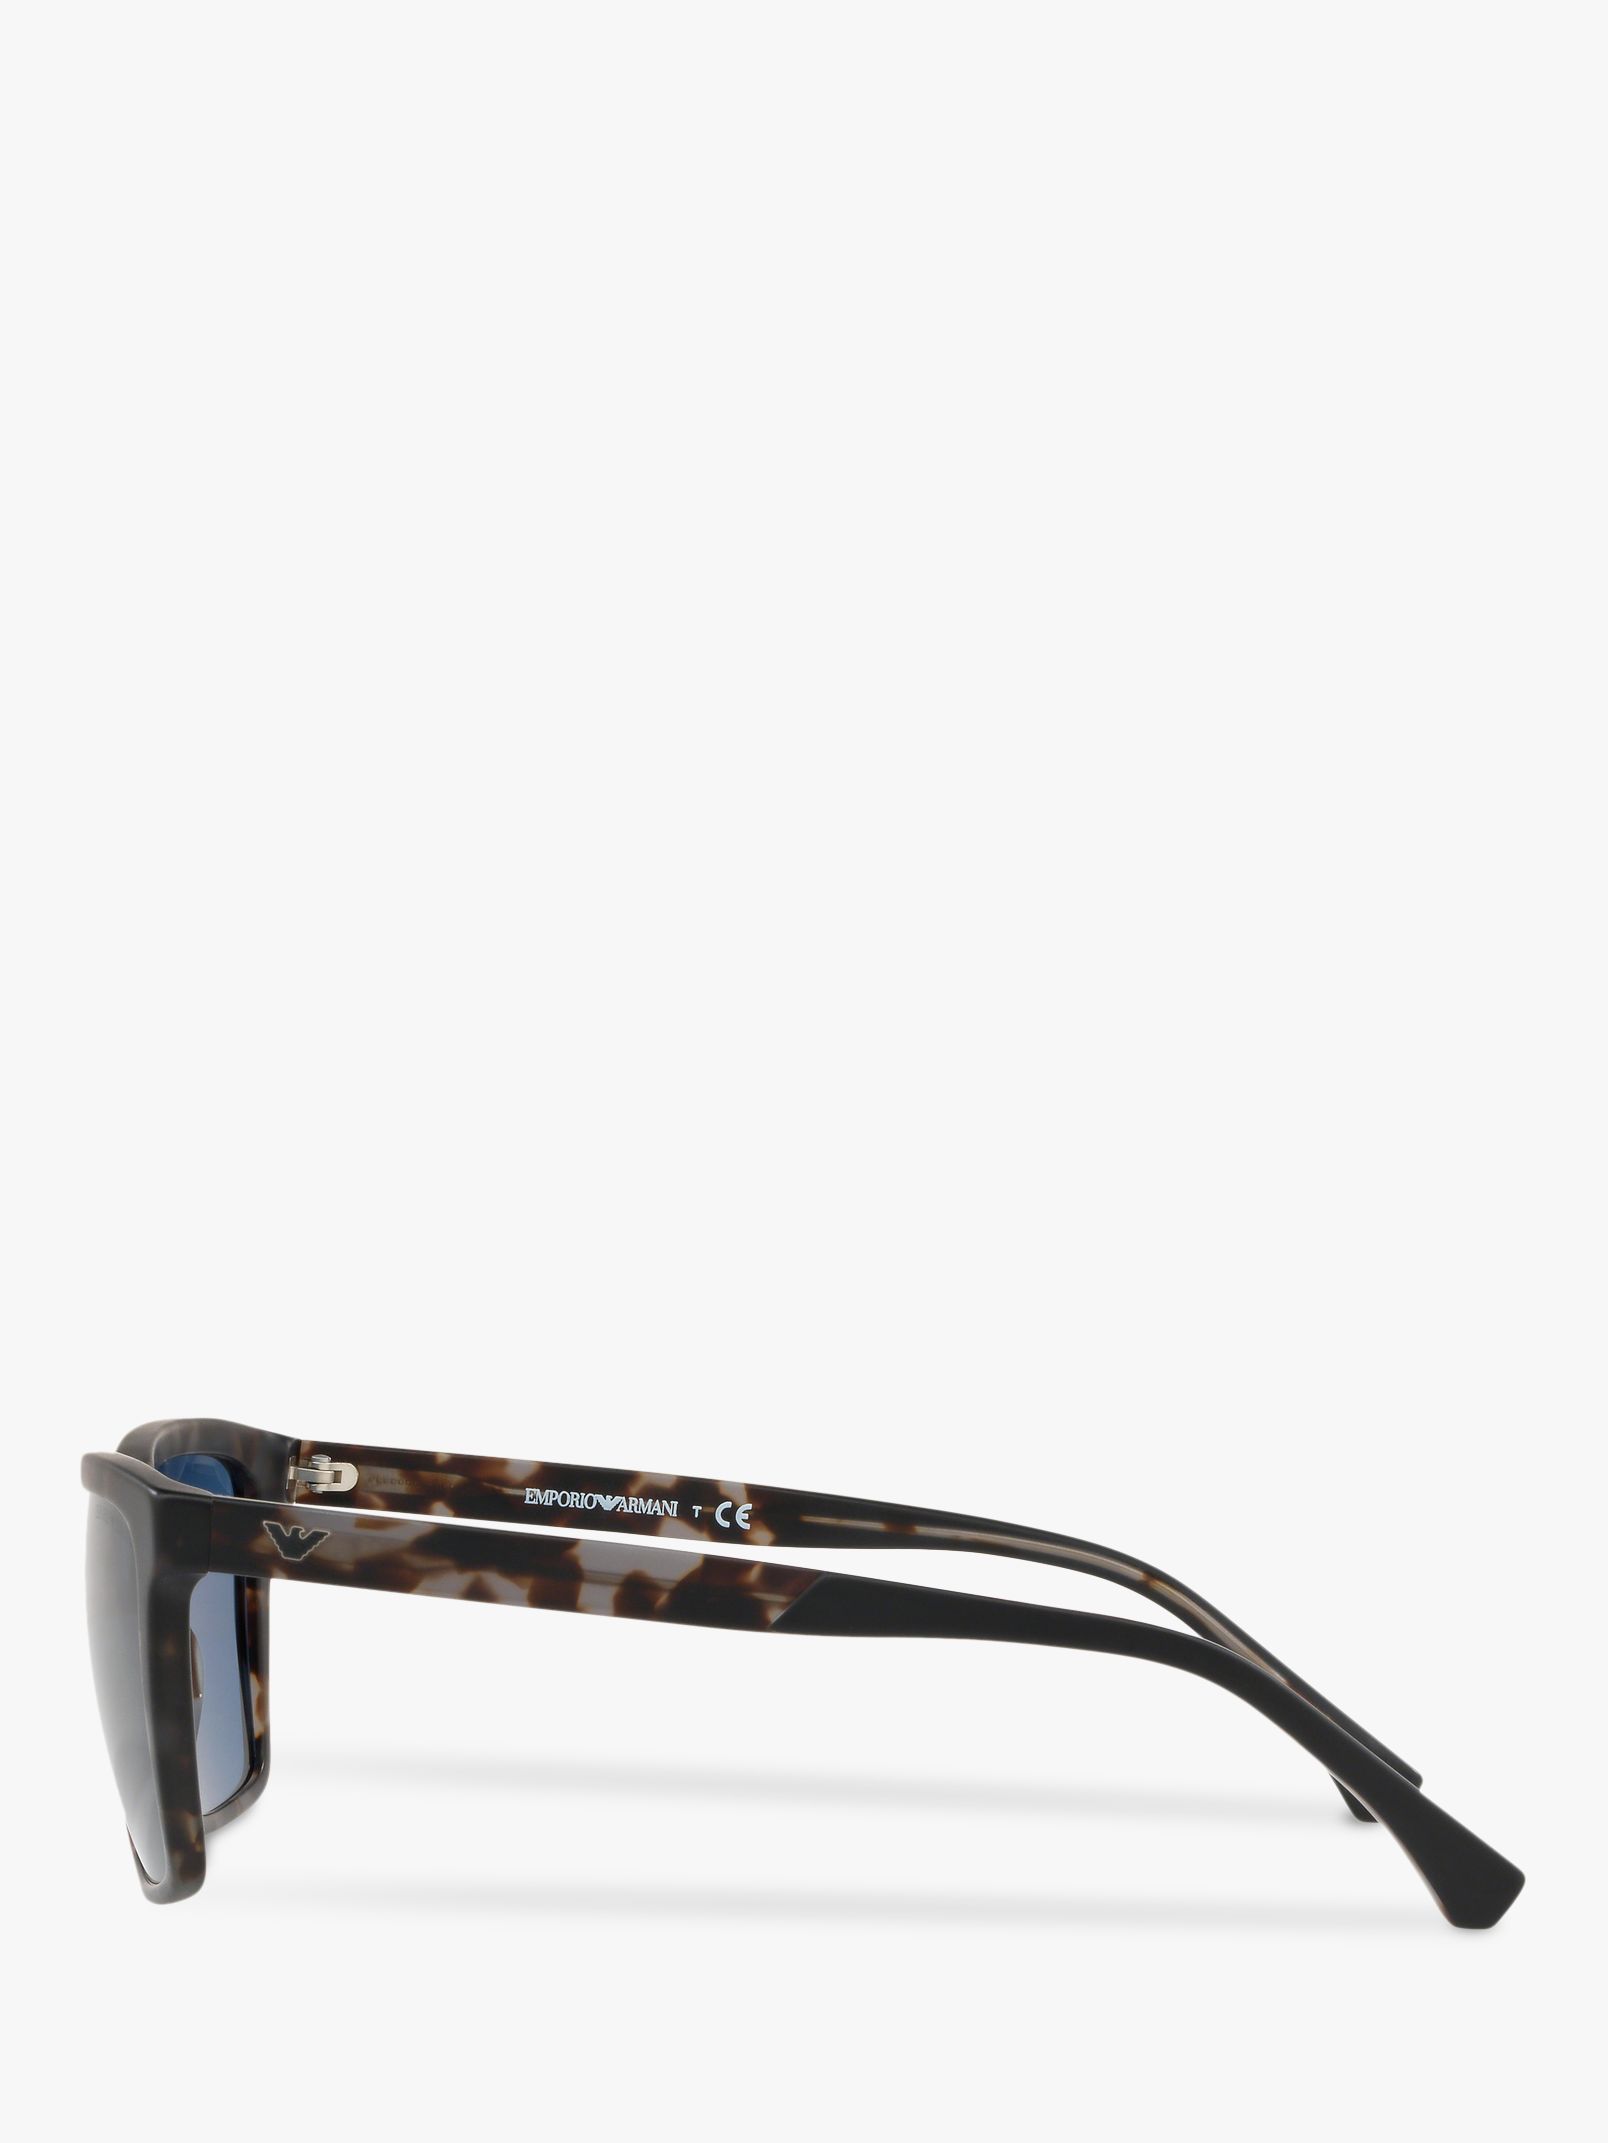 Emporio Armani EA4117 Men's Square Sunglasses, Matte Grey/Blue